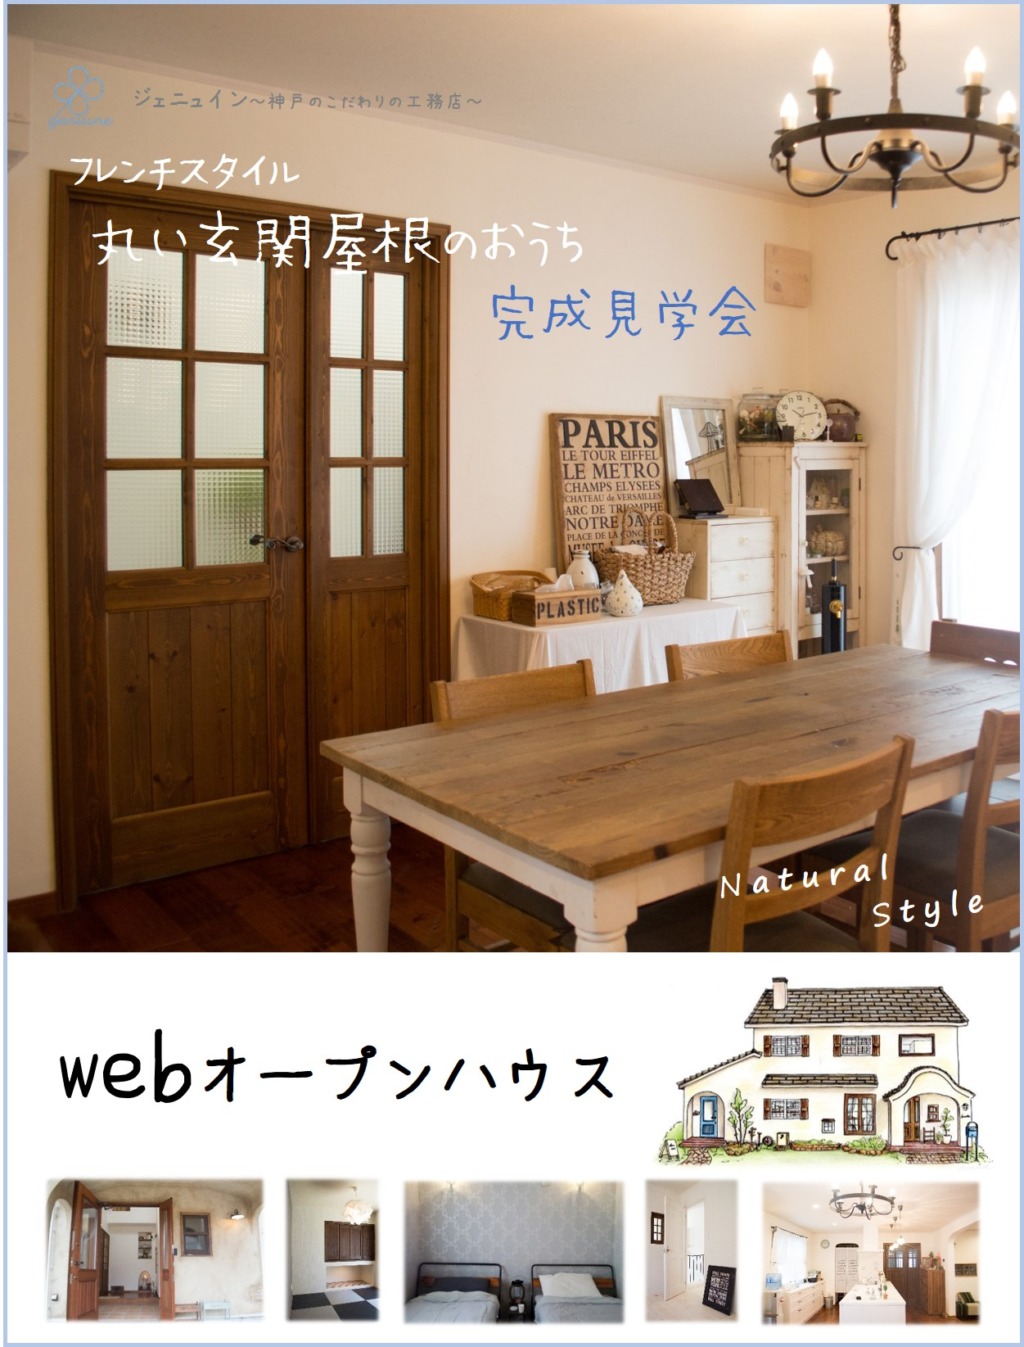 神戸注文住宅 フレンチシックなかわいいお家のwebオープンハウス